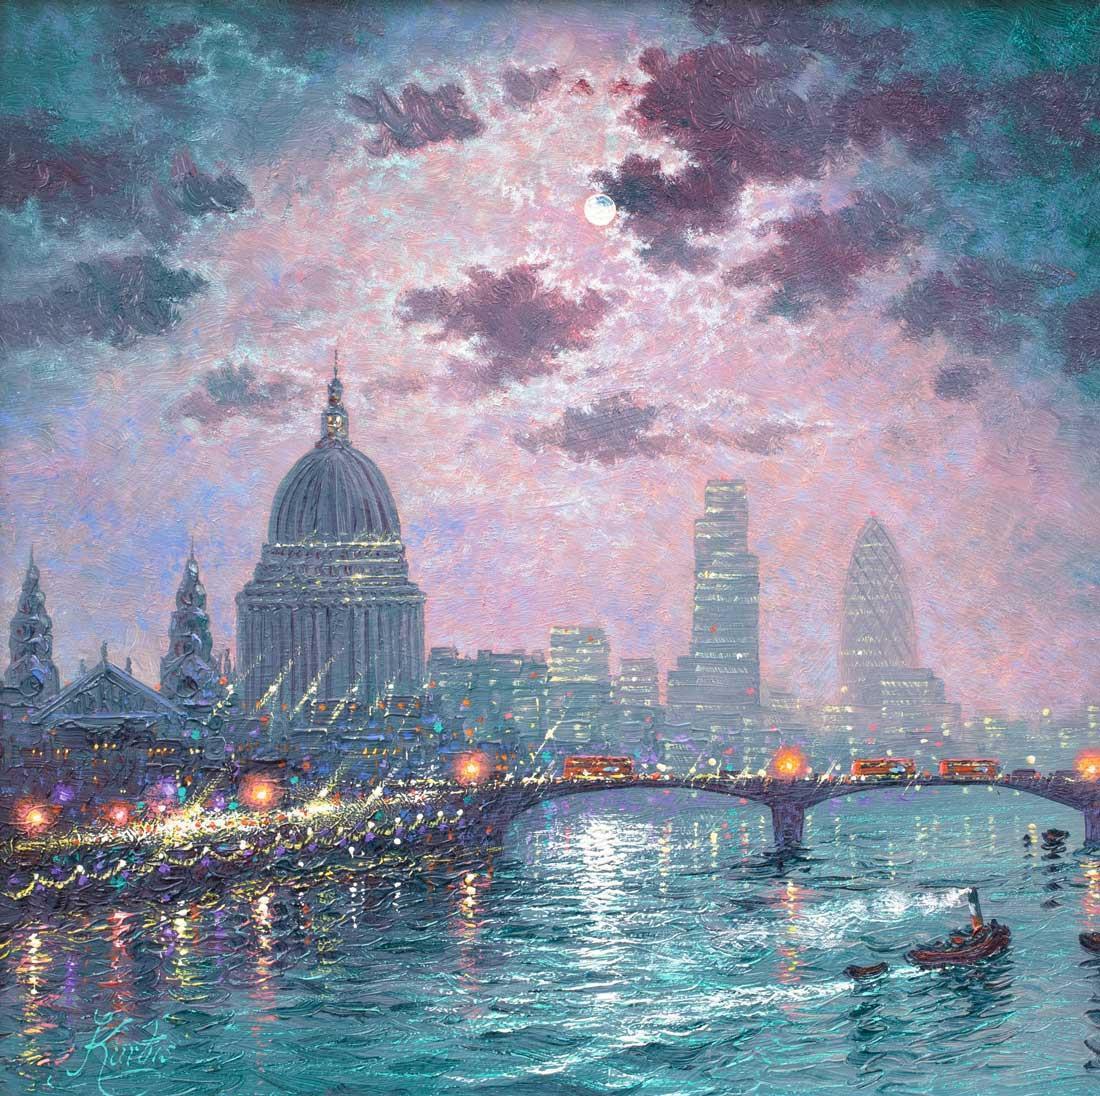 As the Thames Sparkles - Original Andrew Grant Kurtis Framed